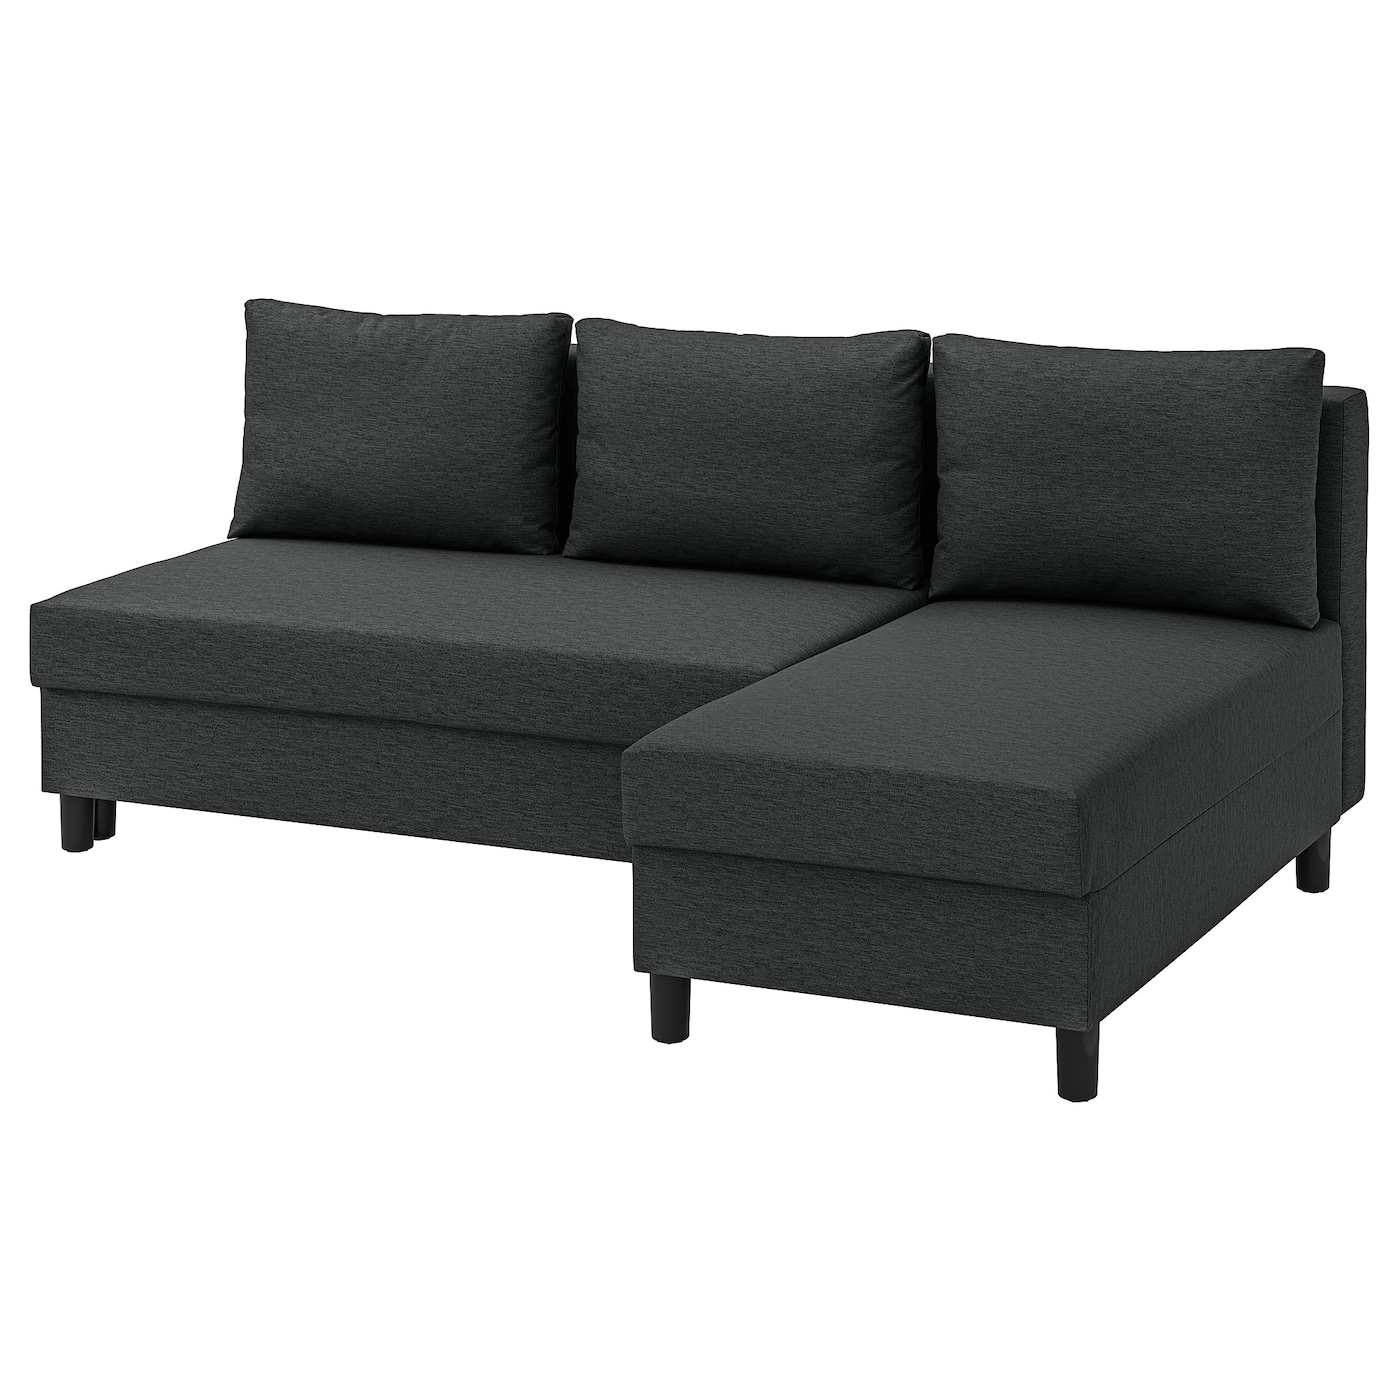 ЭЛВДАЛЕН 3 раскладных дивана + диван, Книса темно-серый ÄLVDALEN IKEA орматек диван кровать sunset ткань шенилл виконт темно серый 140x200